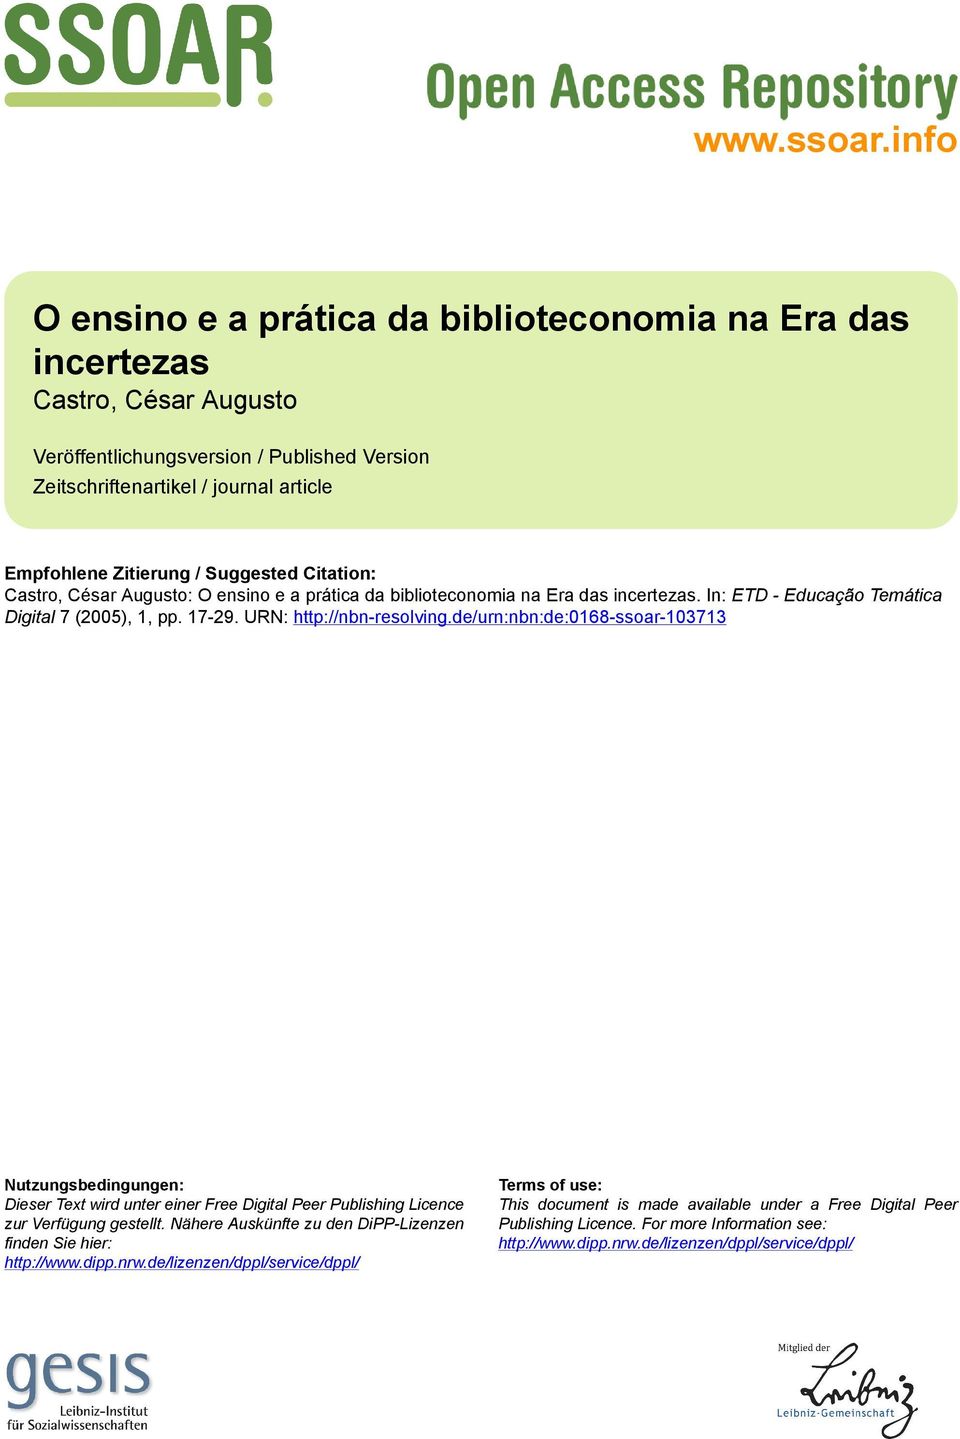 Suggested Citation: Castro, César Augusto: O ensino e a prática da biblioteconomia na Era das incertezas. In: ETD - Educação Temática Digital 7 (2005), 1, pp. 17-29. URN: http://nbn-resolving.